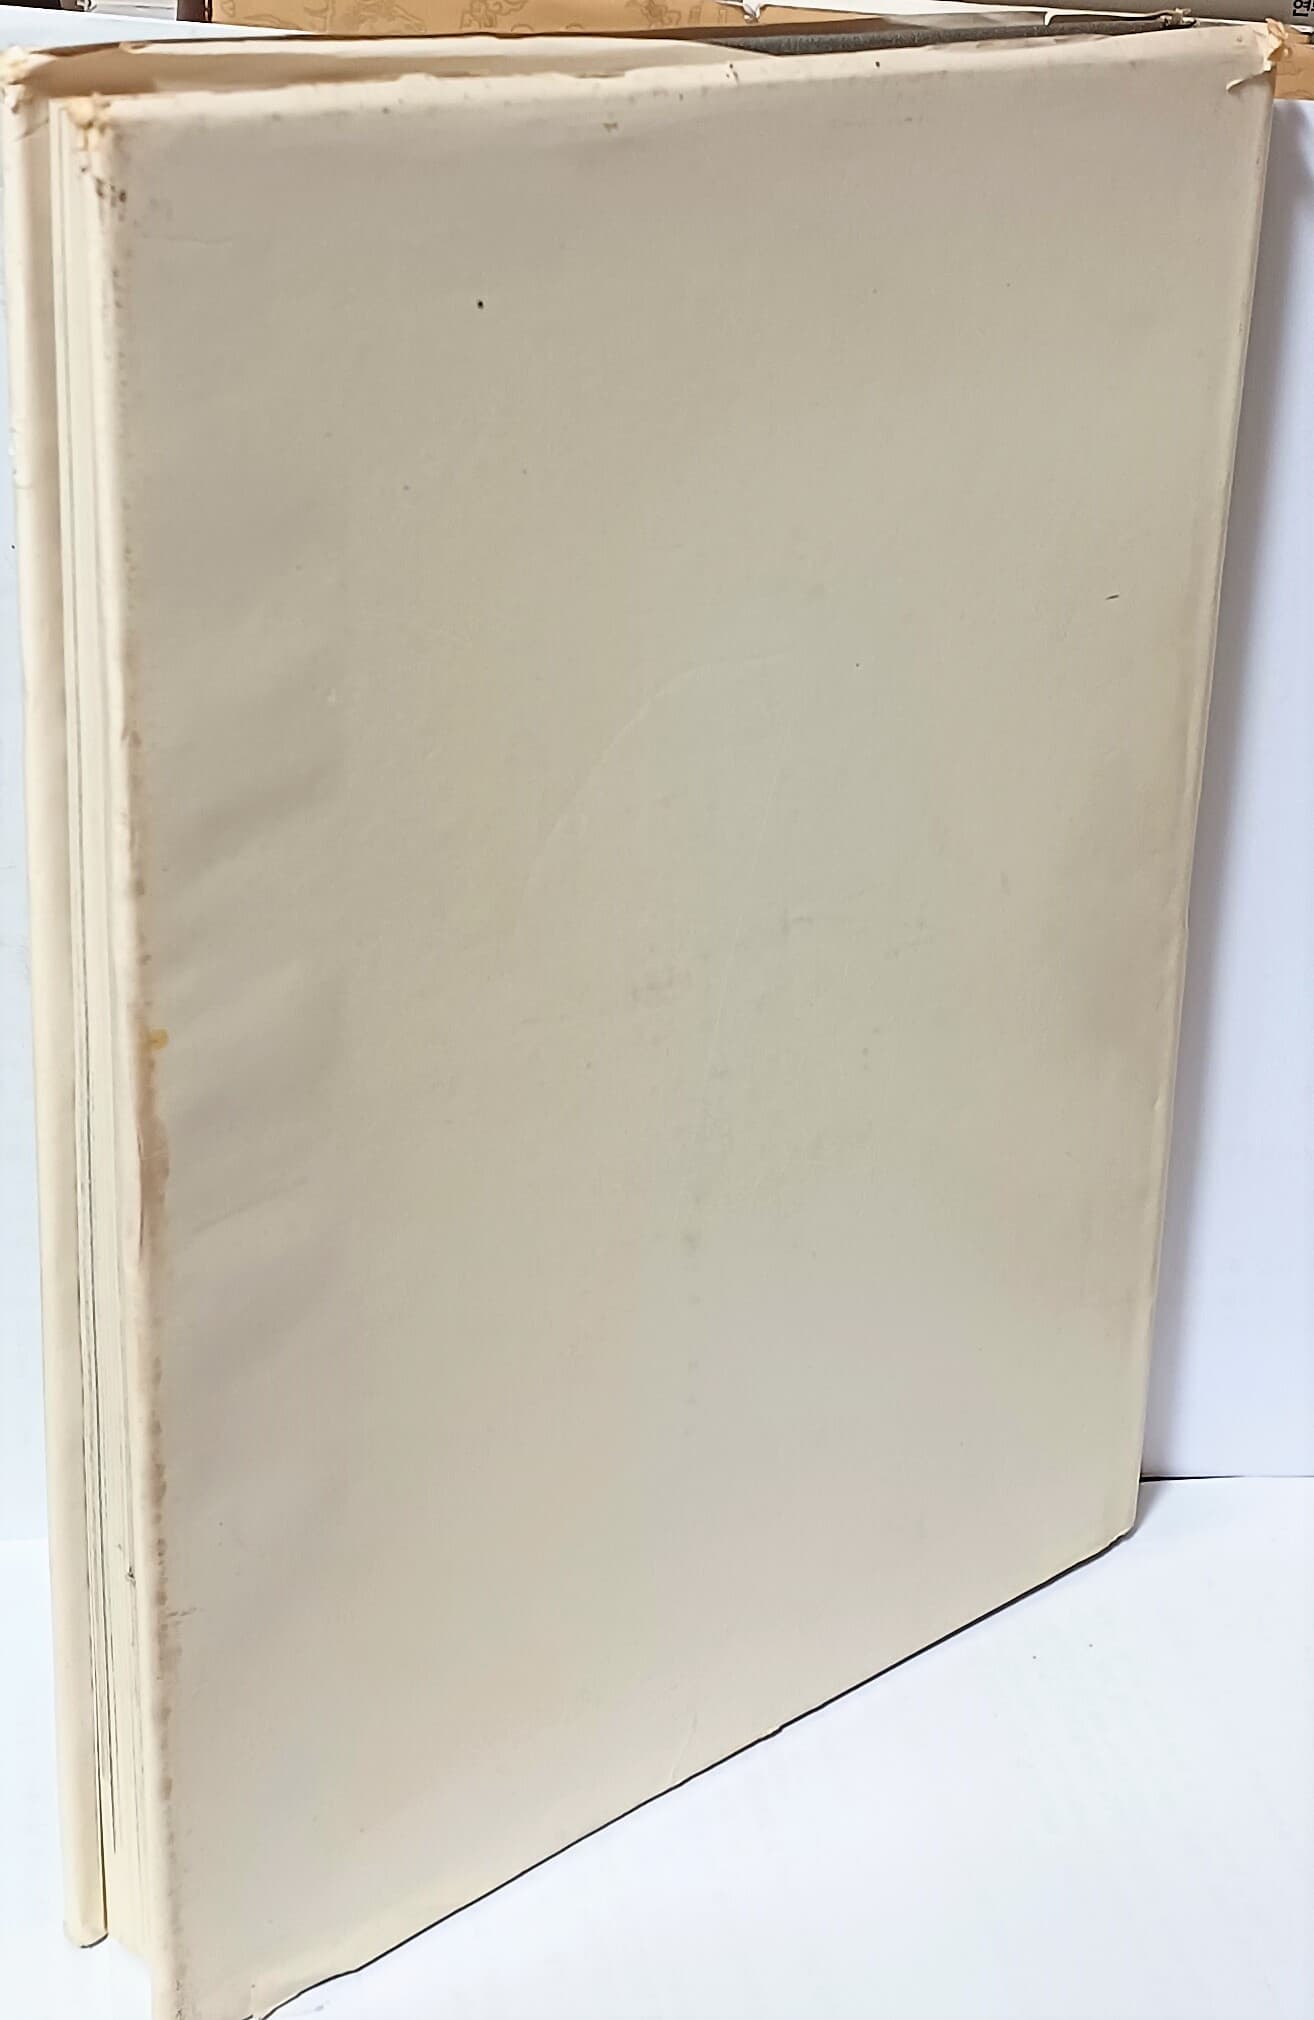 한호의 미술(韓虎의 美術) -흑백,컬러도판-235/310/25, 237쪽,하드커버-절판된 귀한책-